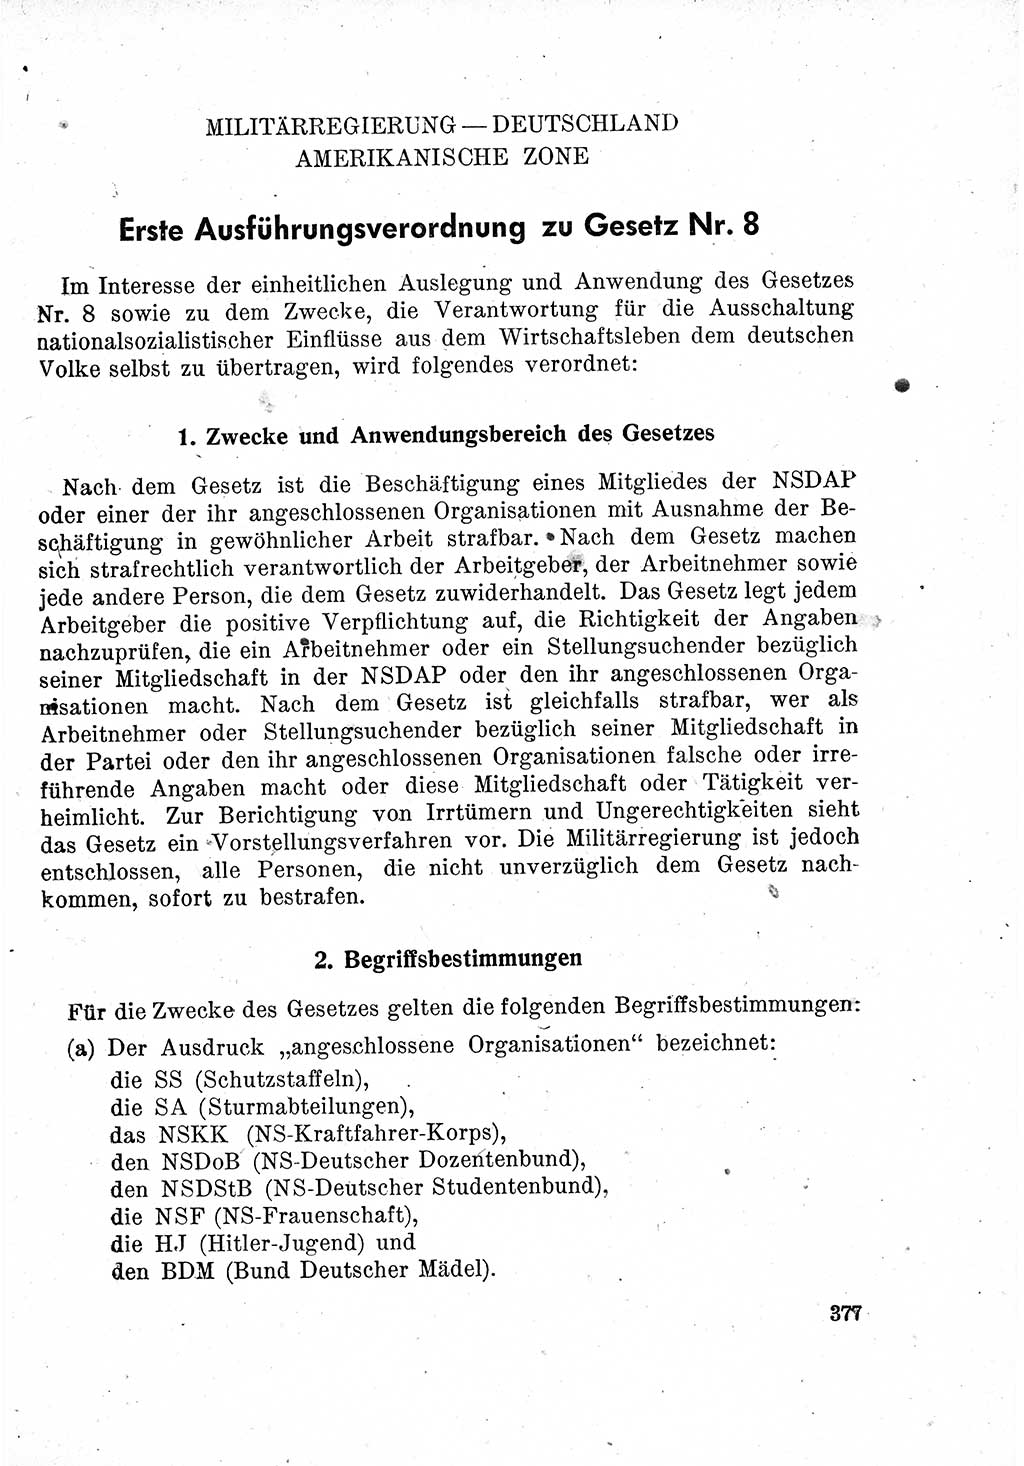 Das Recht der Besatzungsmacht (Deutschland), Proklamationen, Deklerationen, Verordnungen, Gesetze und Bekanntmachungen 1947, Seite 377 (R. Bes. Dtl. 1947, S. 377)